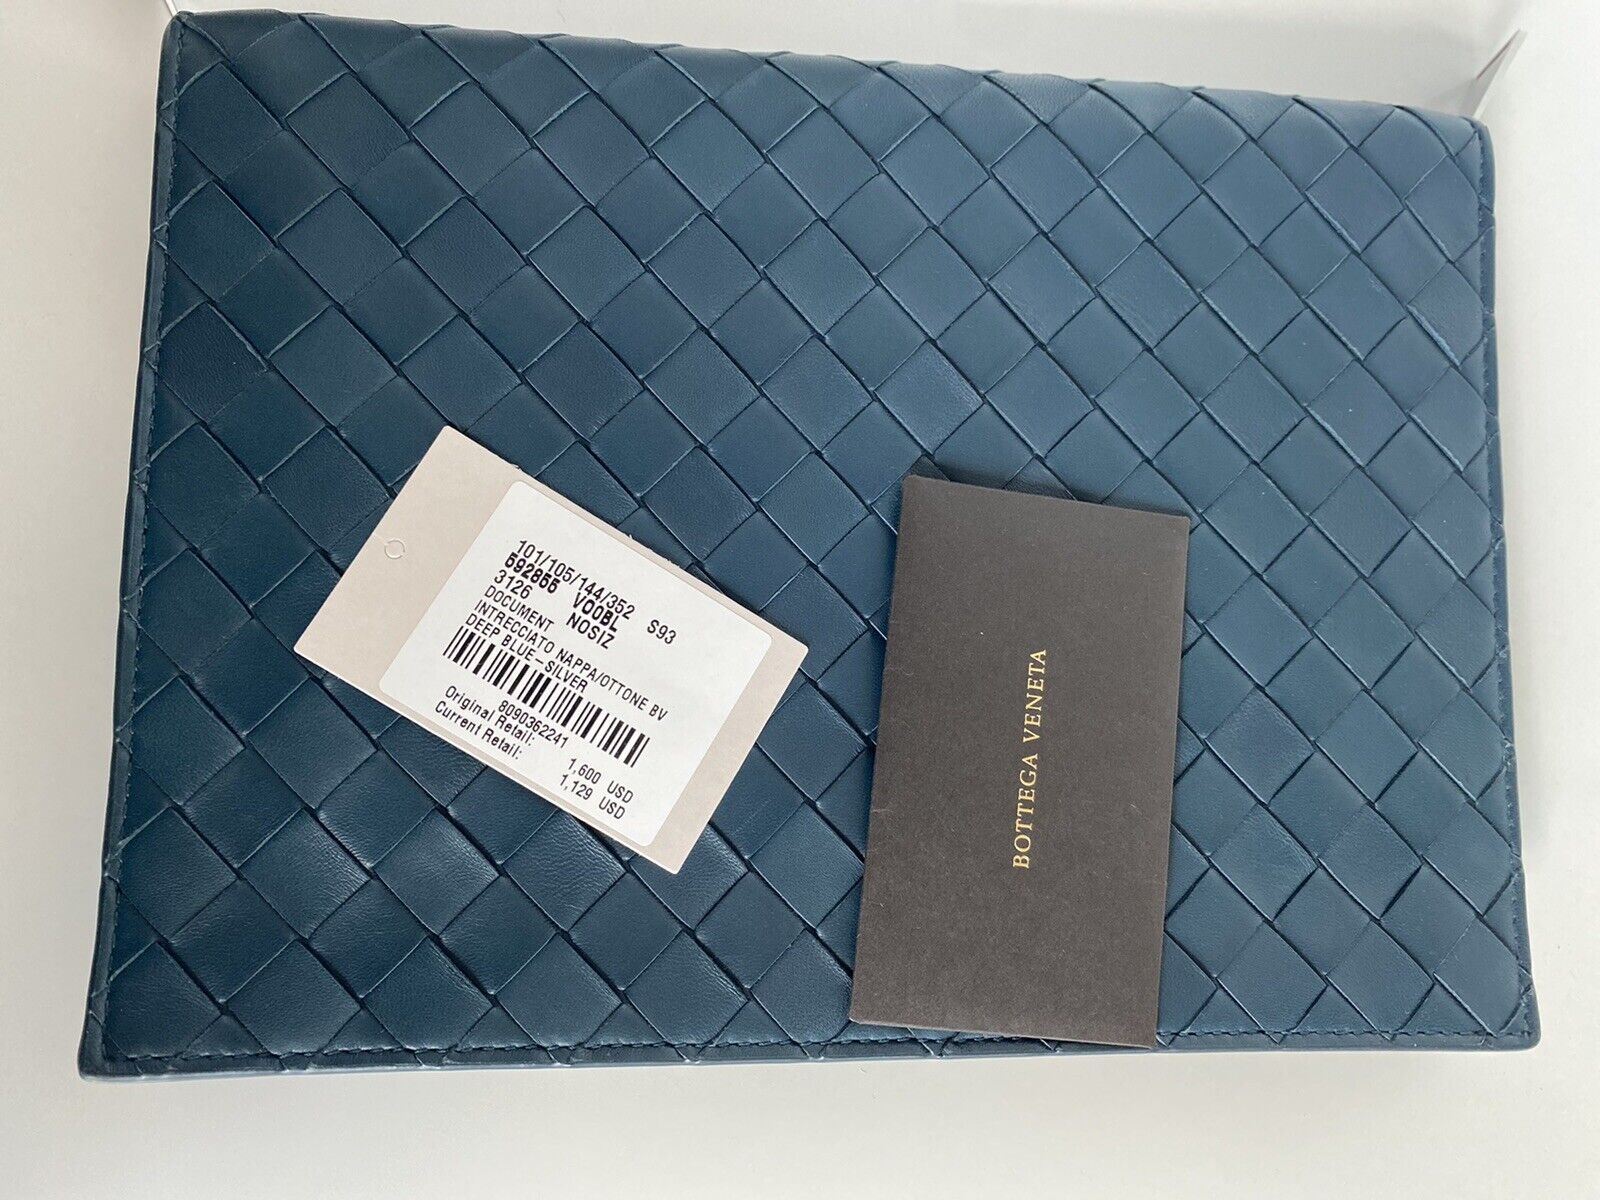 NWT 1600 долларов США Bottega Veneta Intrecciato Кожаный чехол для документов темно-синего цвета 592855 IT 